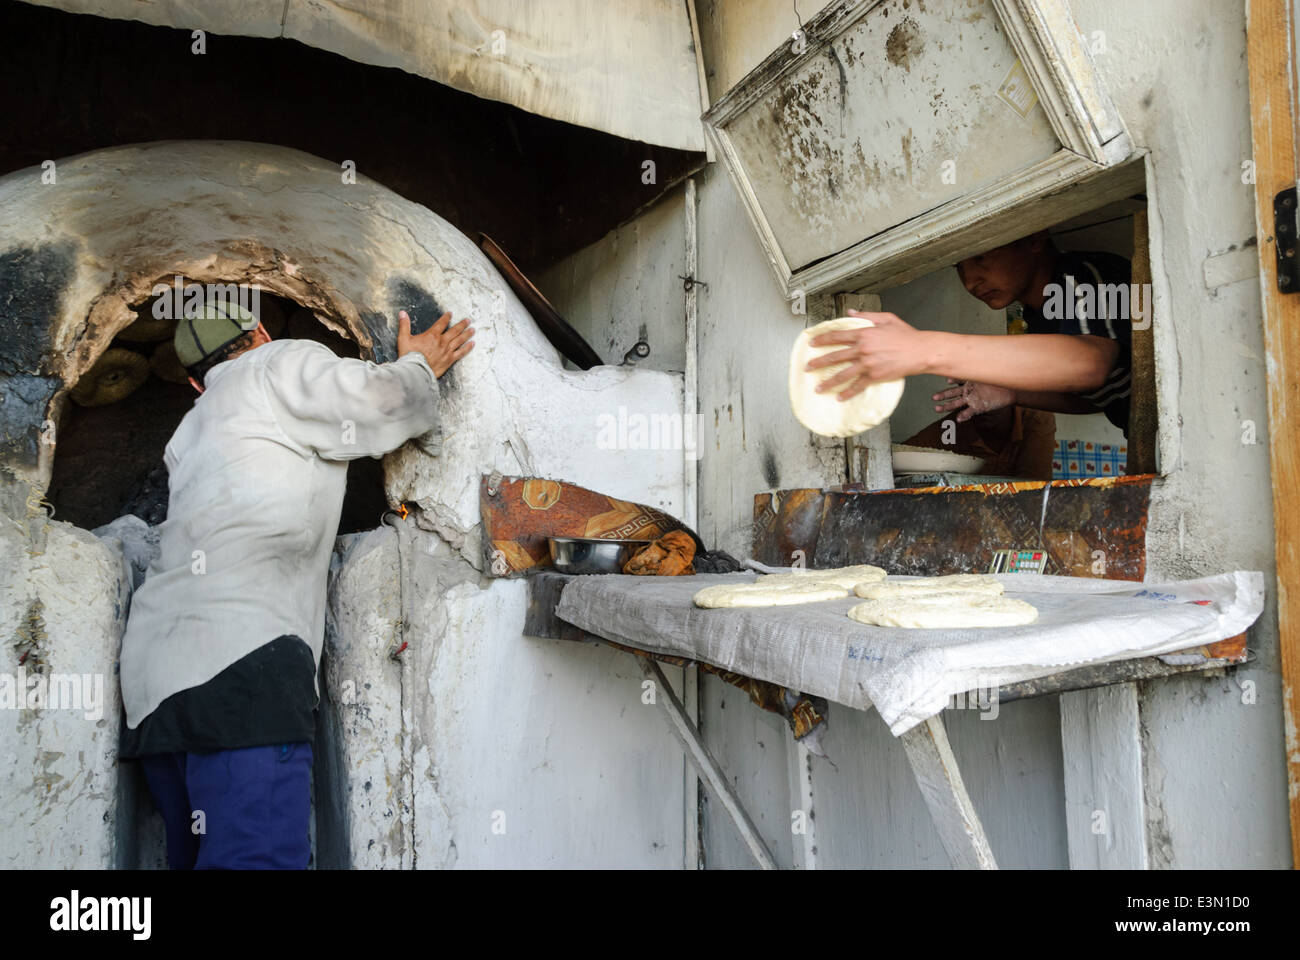 La gente haciendo pan en un horno tradicional, Uzbekistán, en el Asia Central. Foto de stock